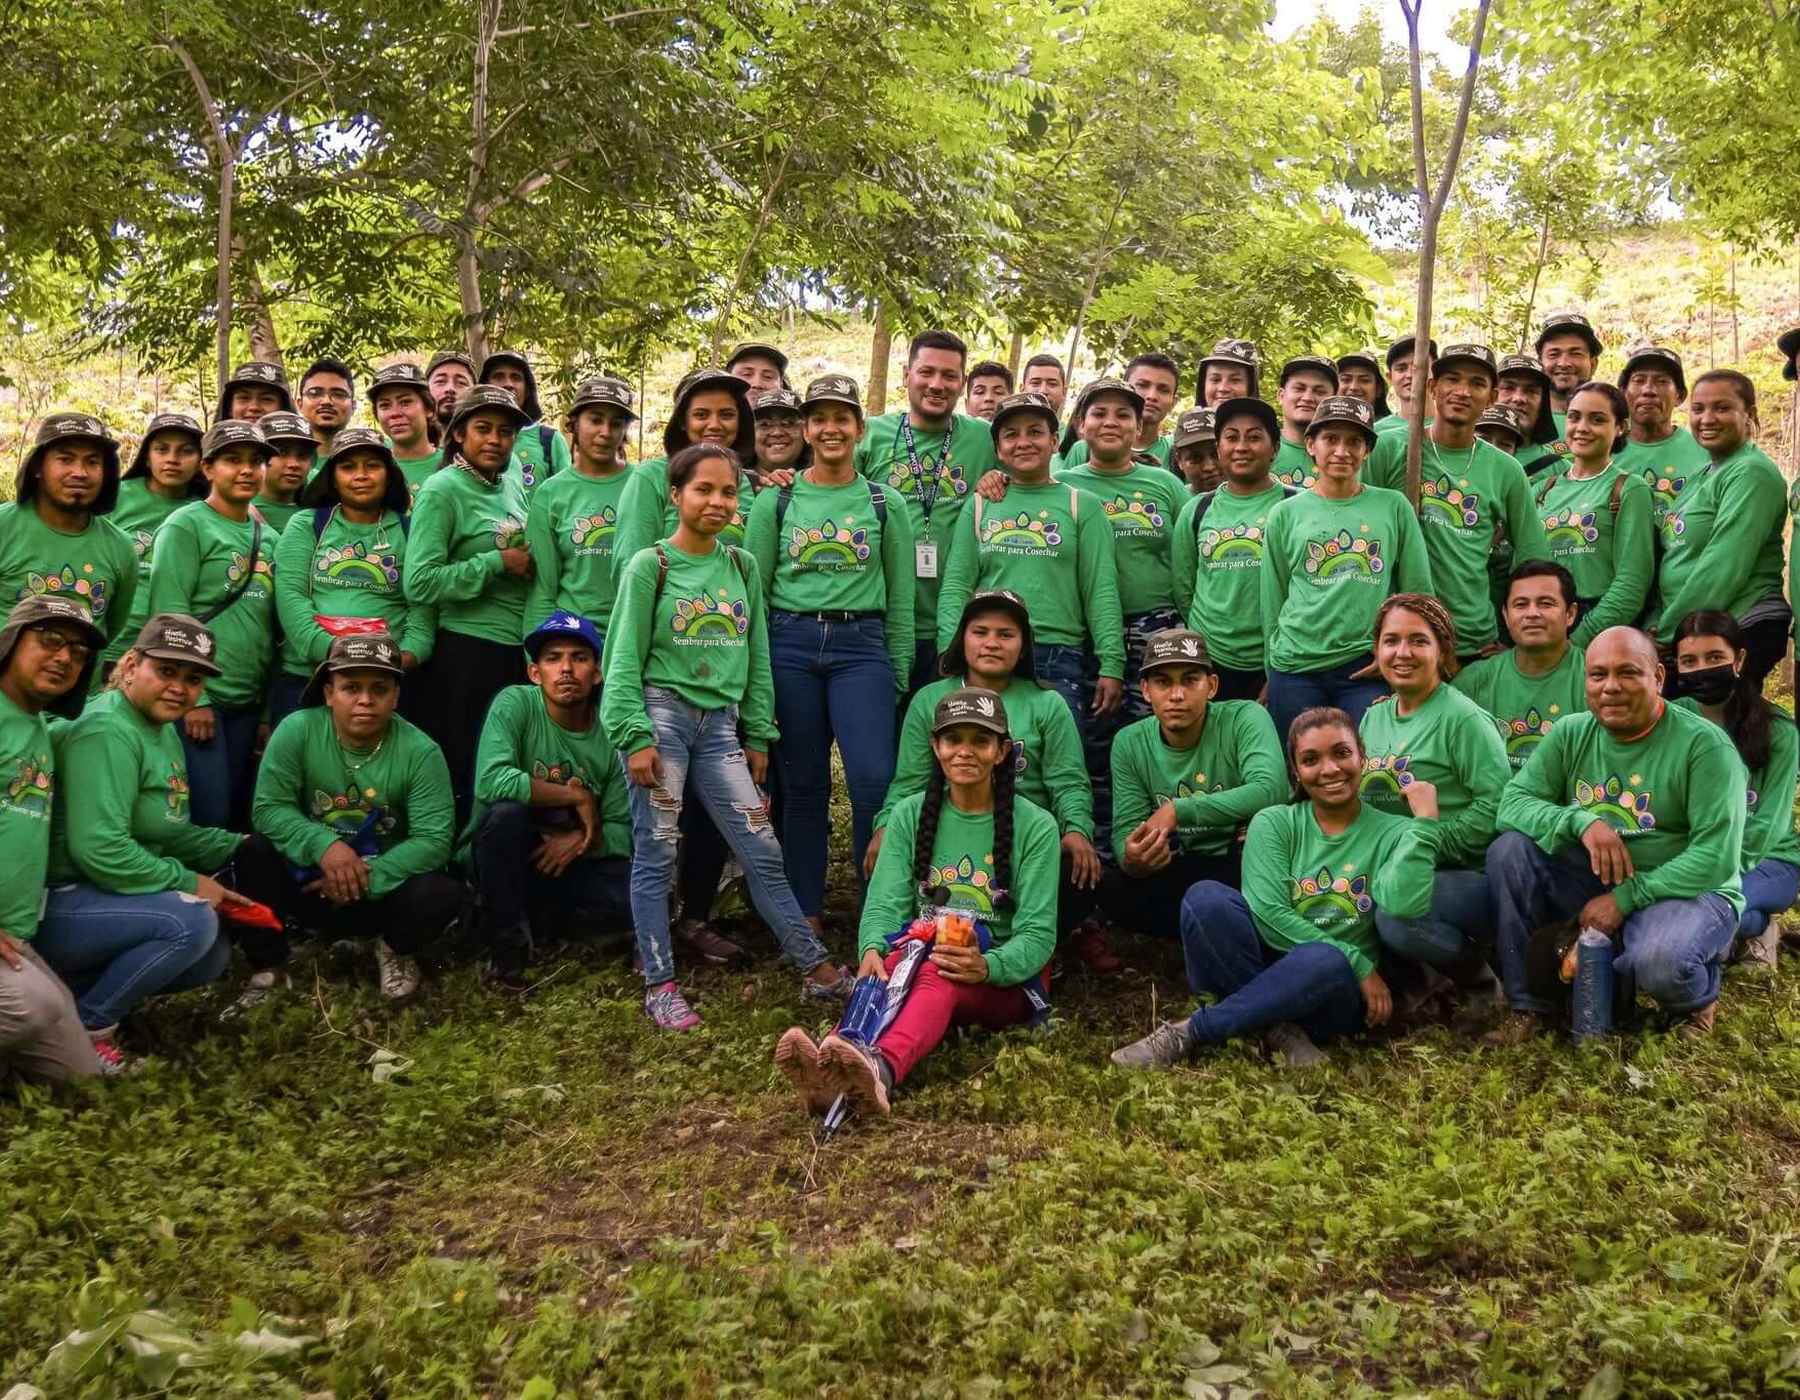 Una foto grupal de empleados de Nicaragua parados afuera con camisetas verdes de Gildan.